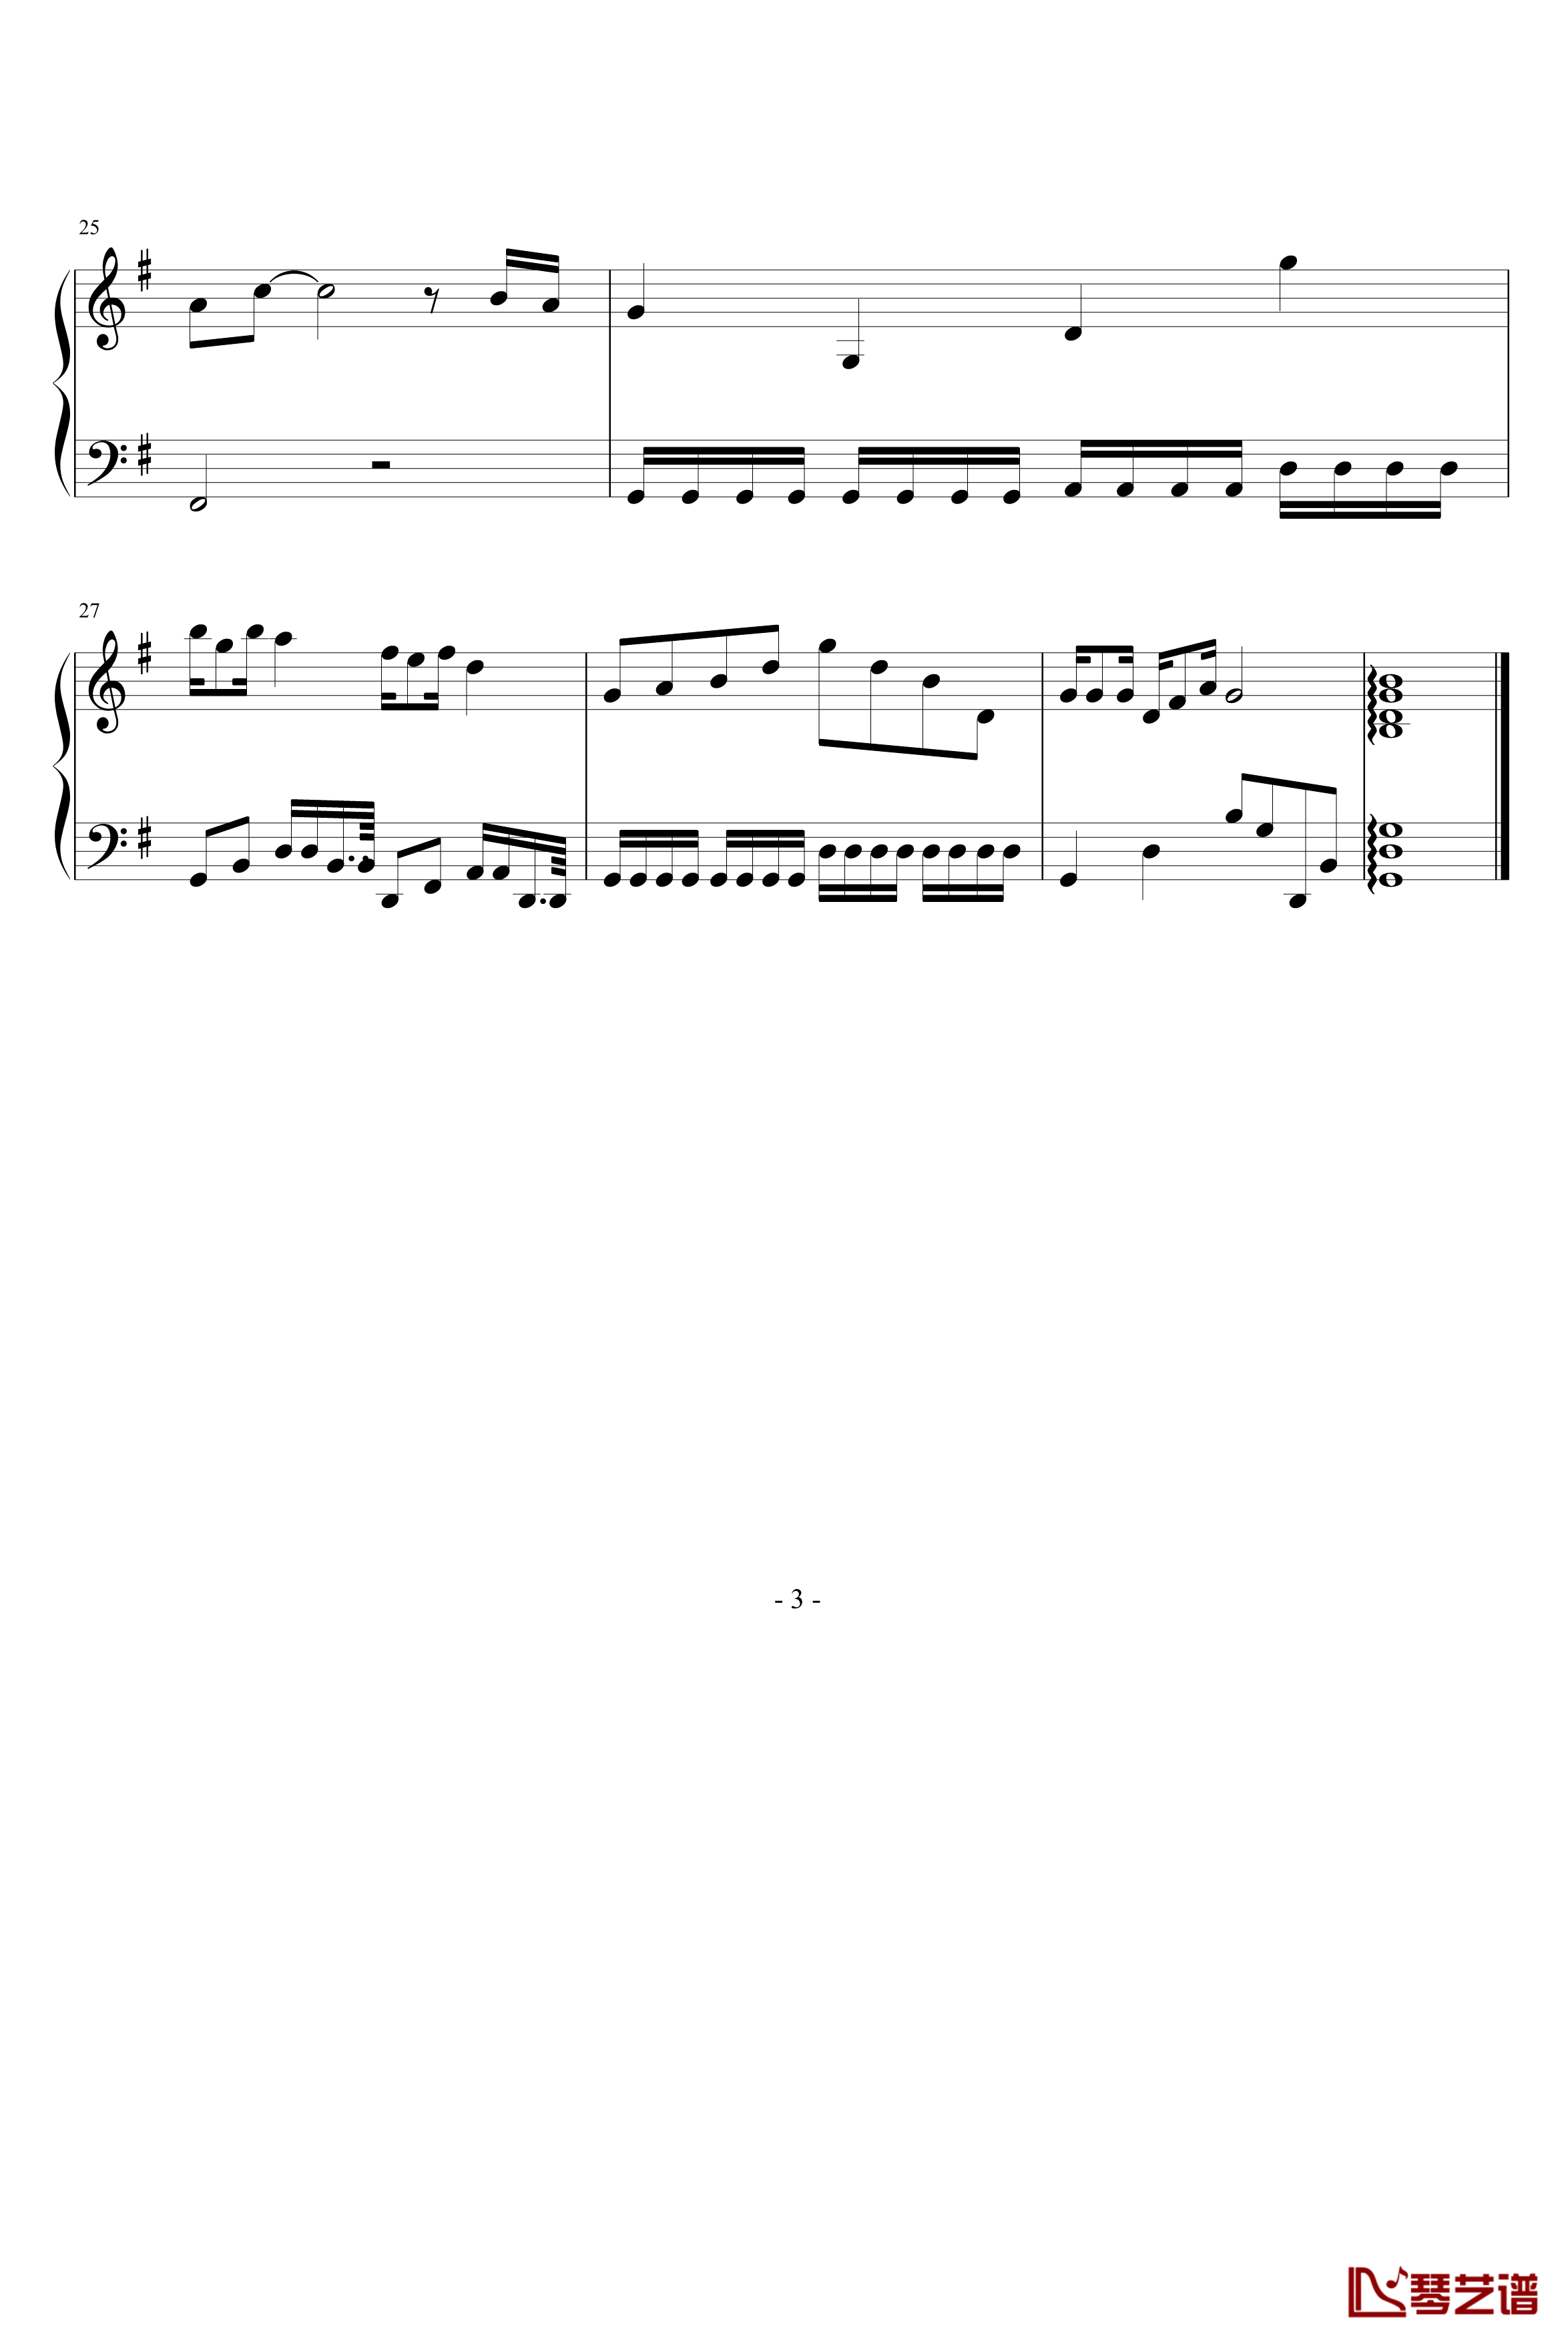 CG的旋律钢琴谱-97525xc3